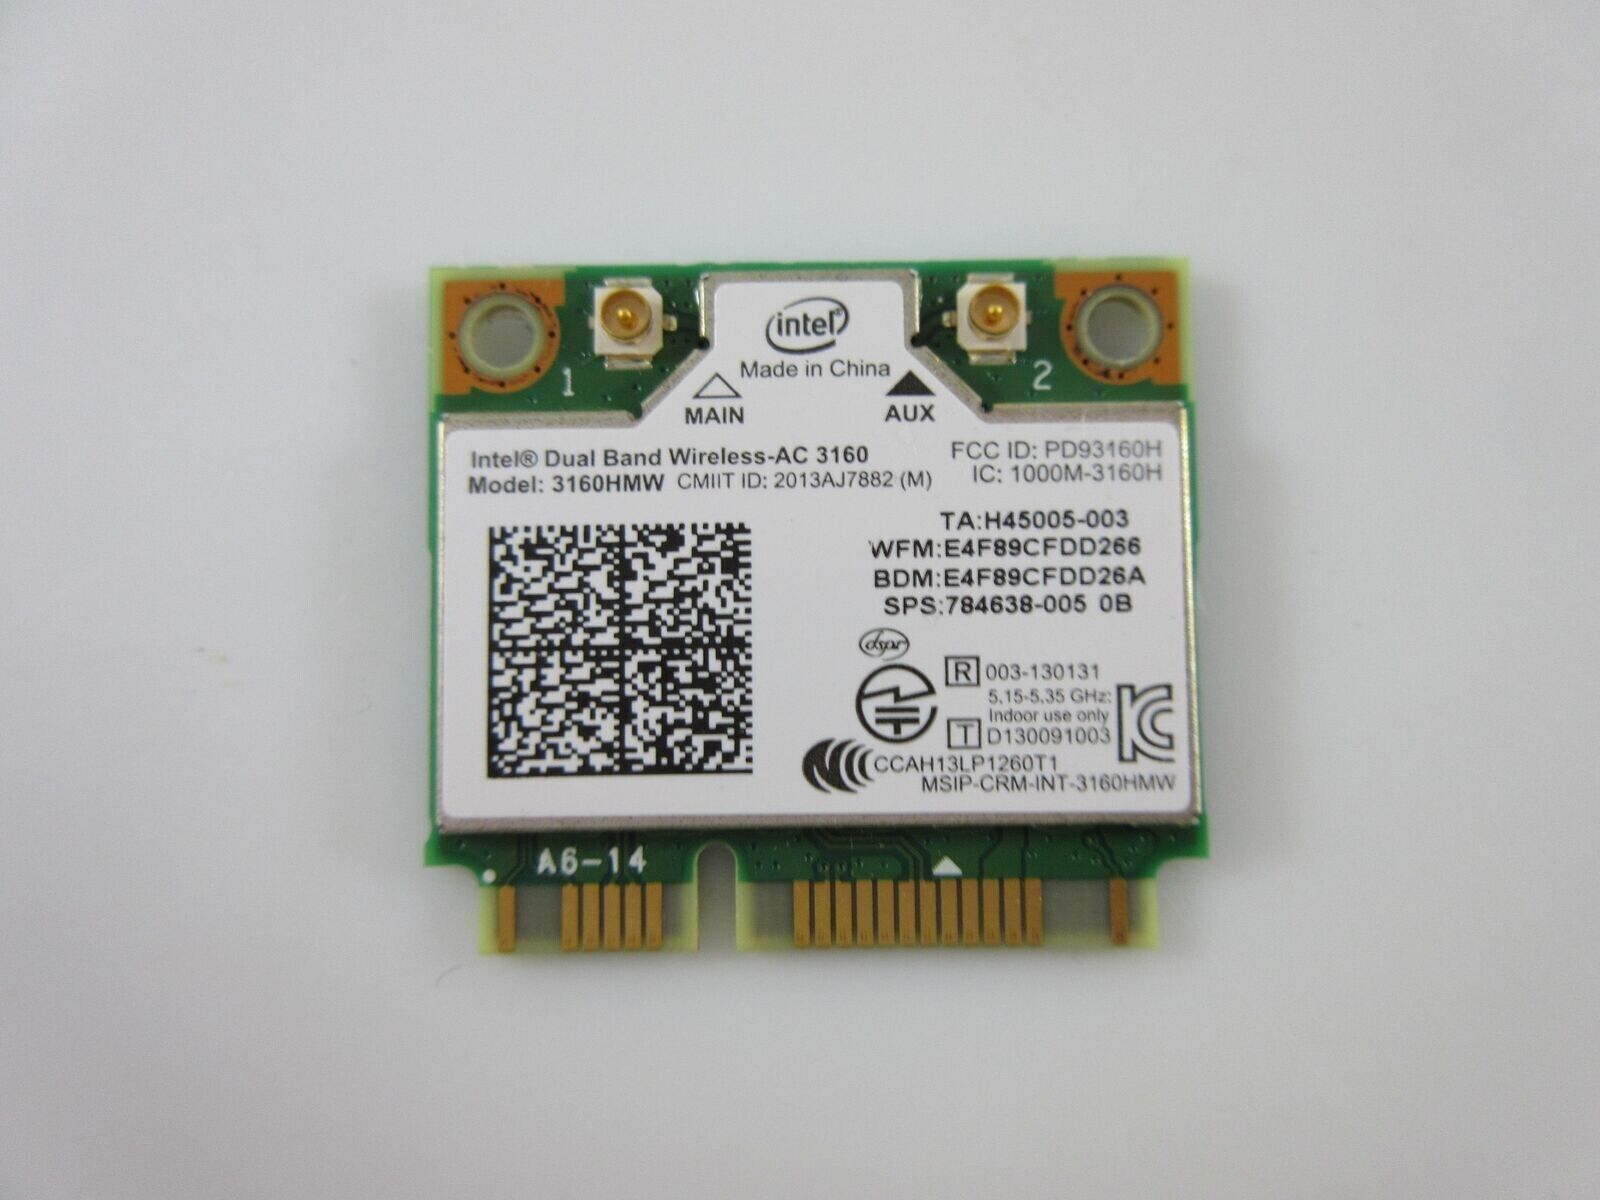 Intel Dual Band Wireless-AC 3160HMW WIFI Wireless BLUETOOTH 4.0 Card 784638-001